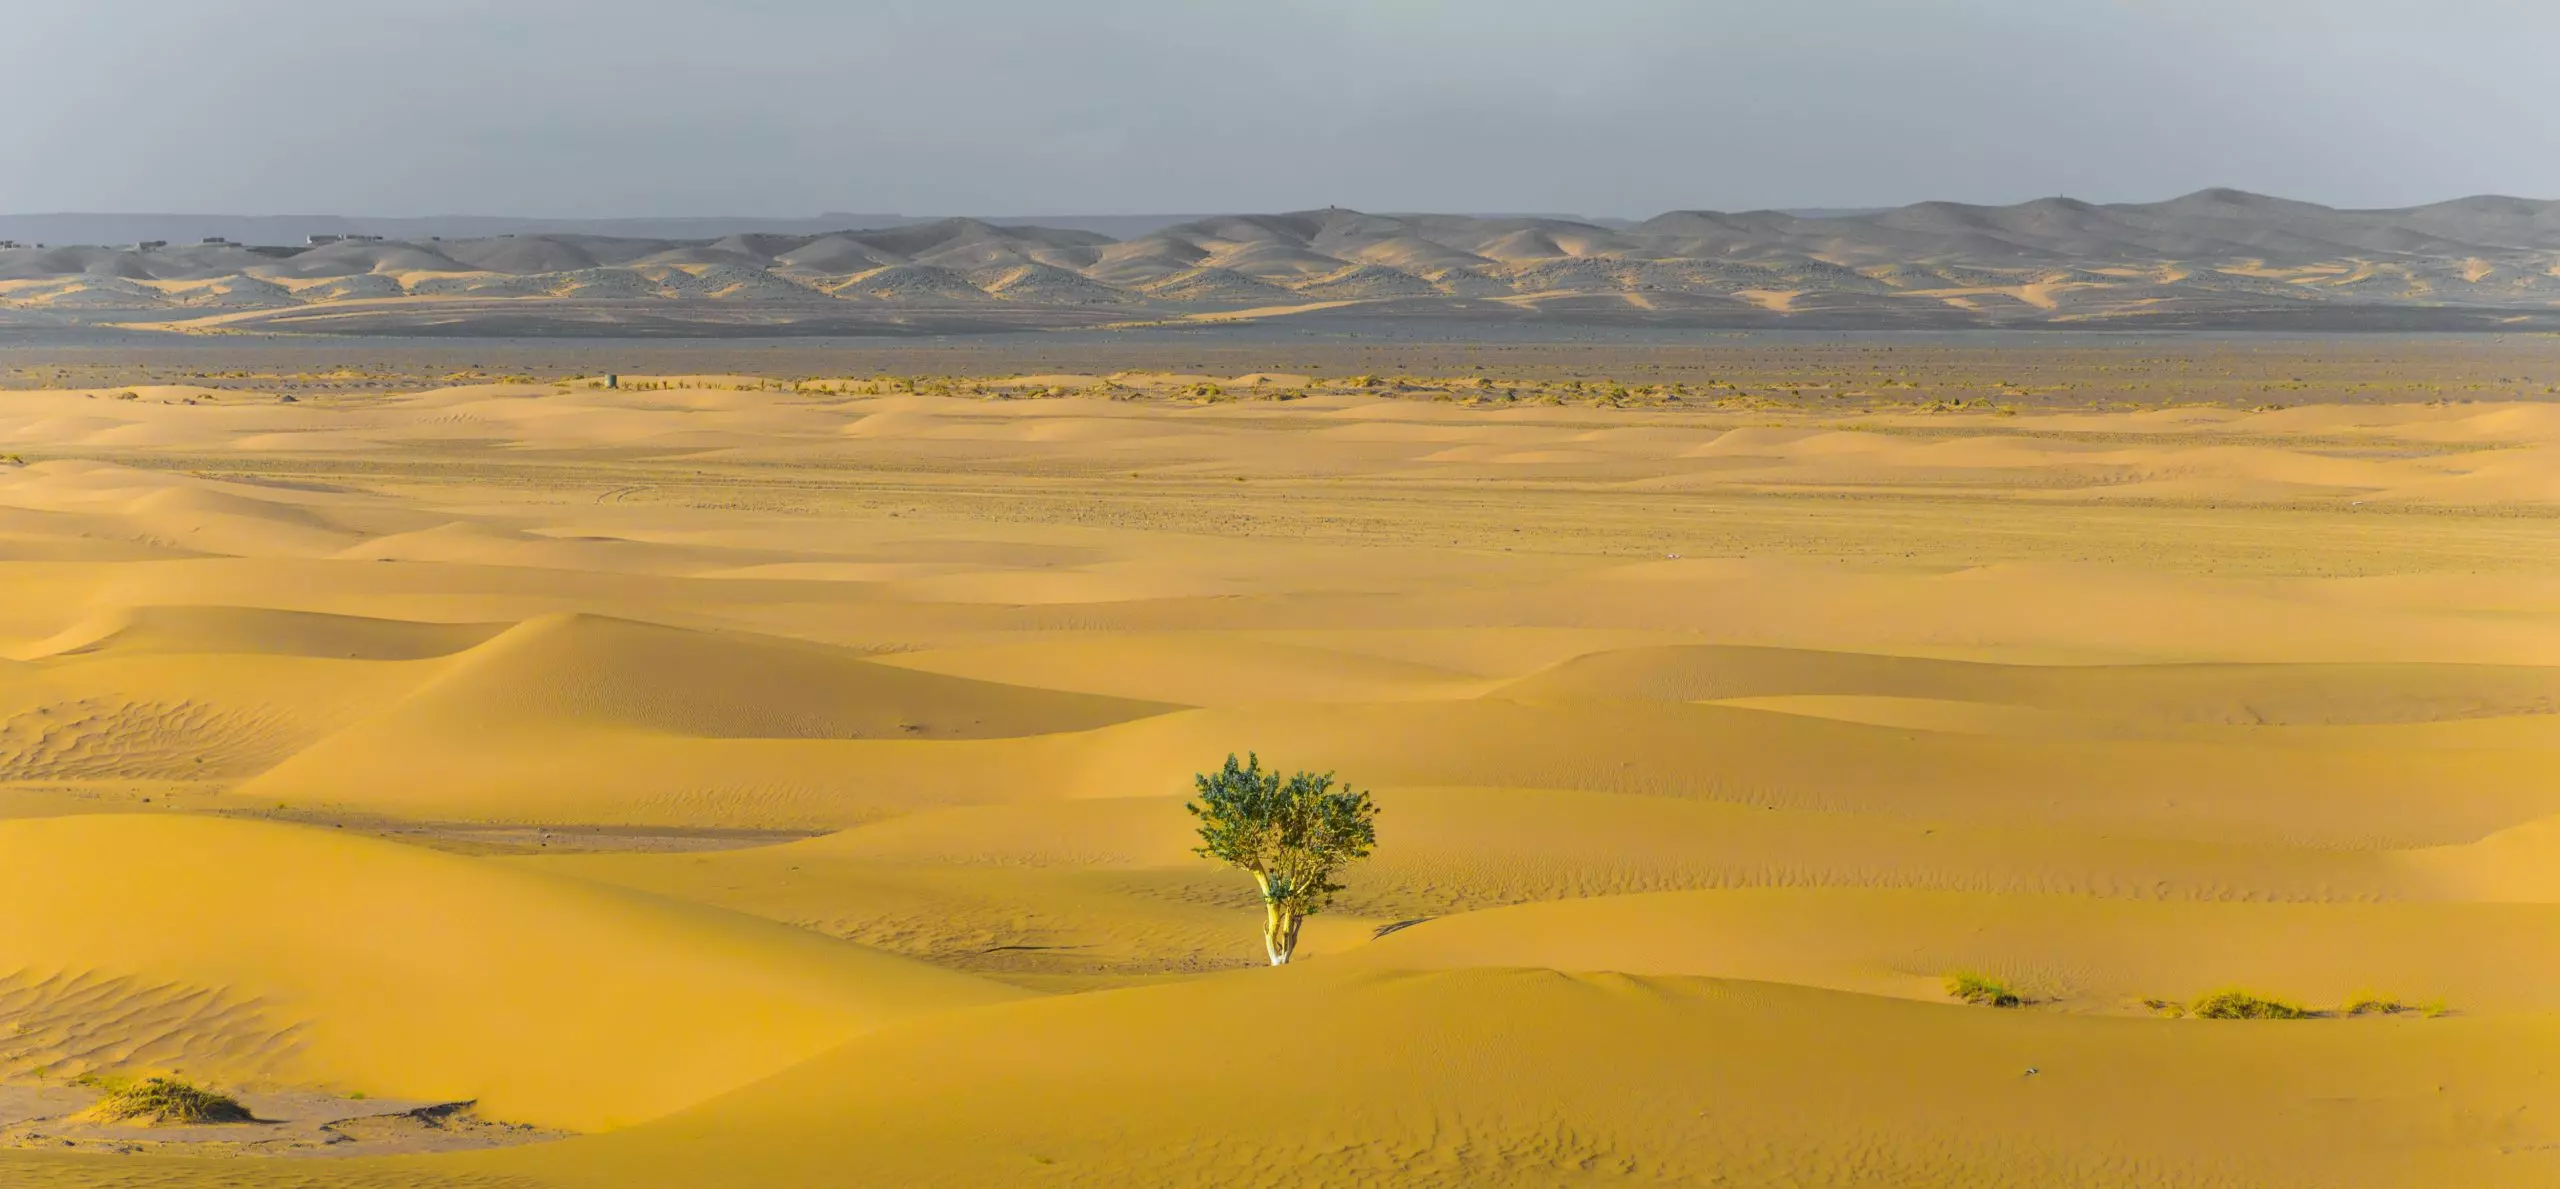 A single tree in a sandy desert